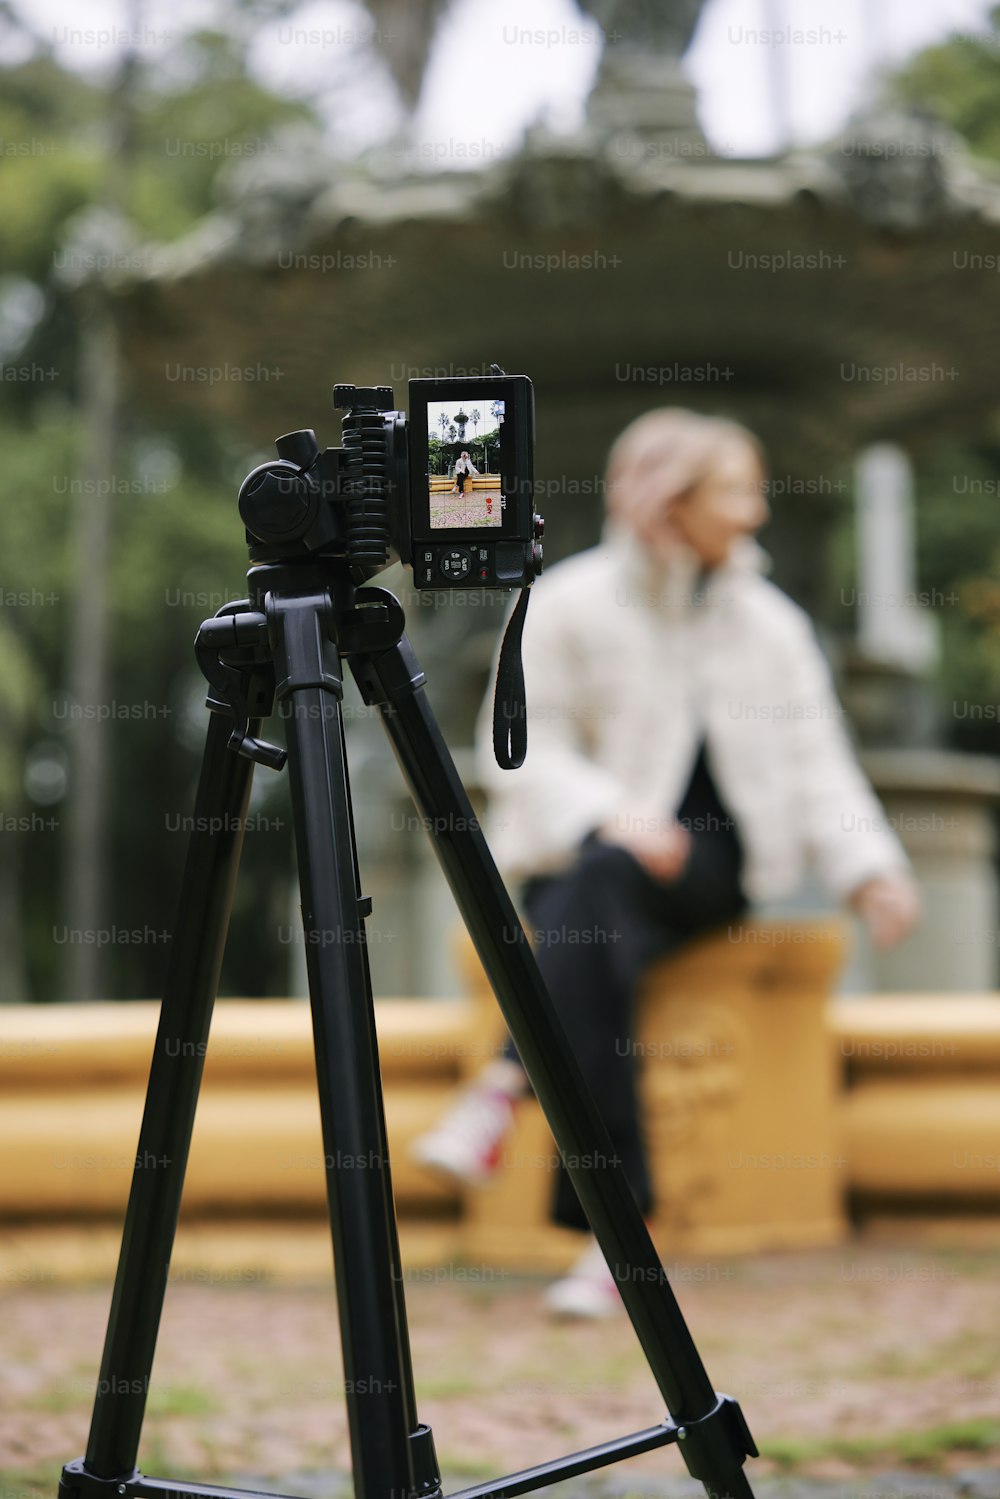 Una persona sentada en un banco con una cámara en un trípode